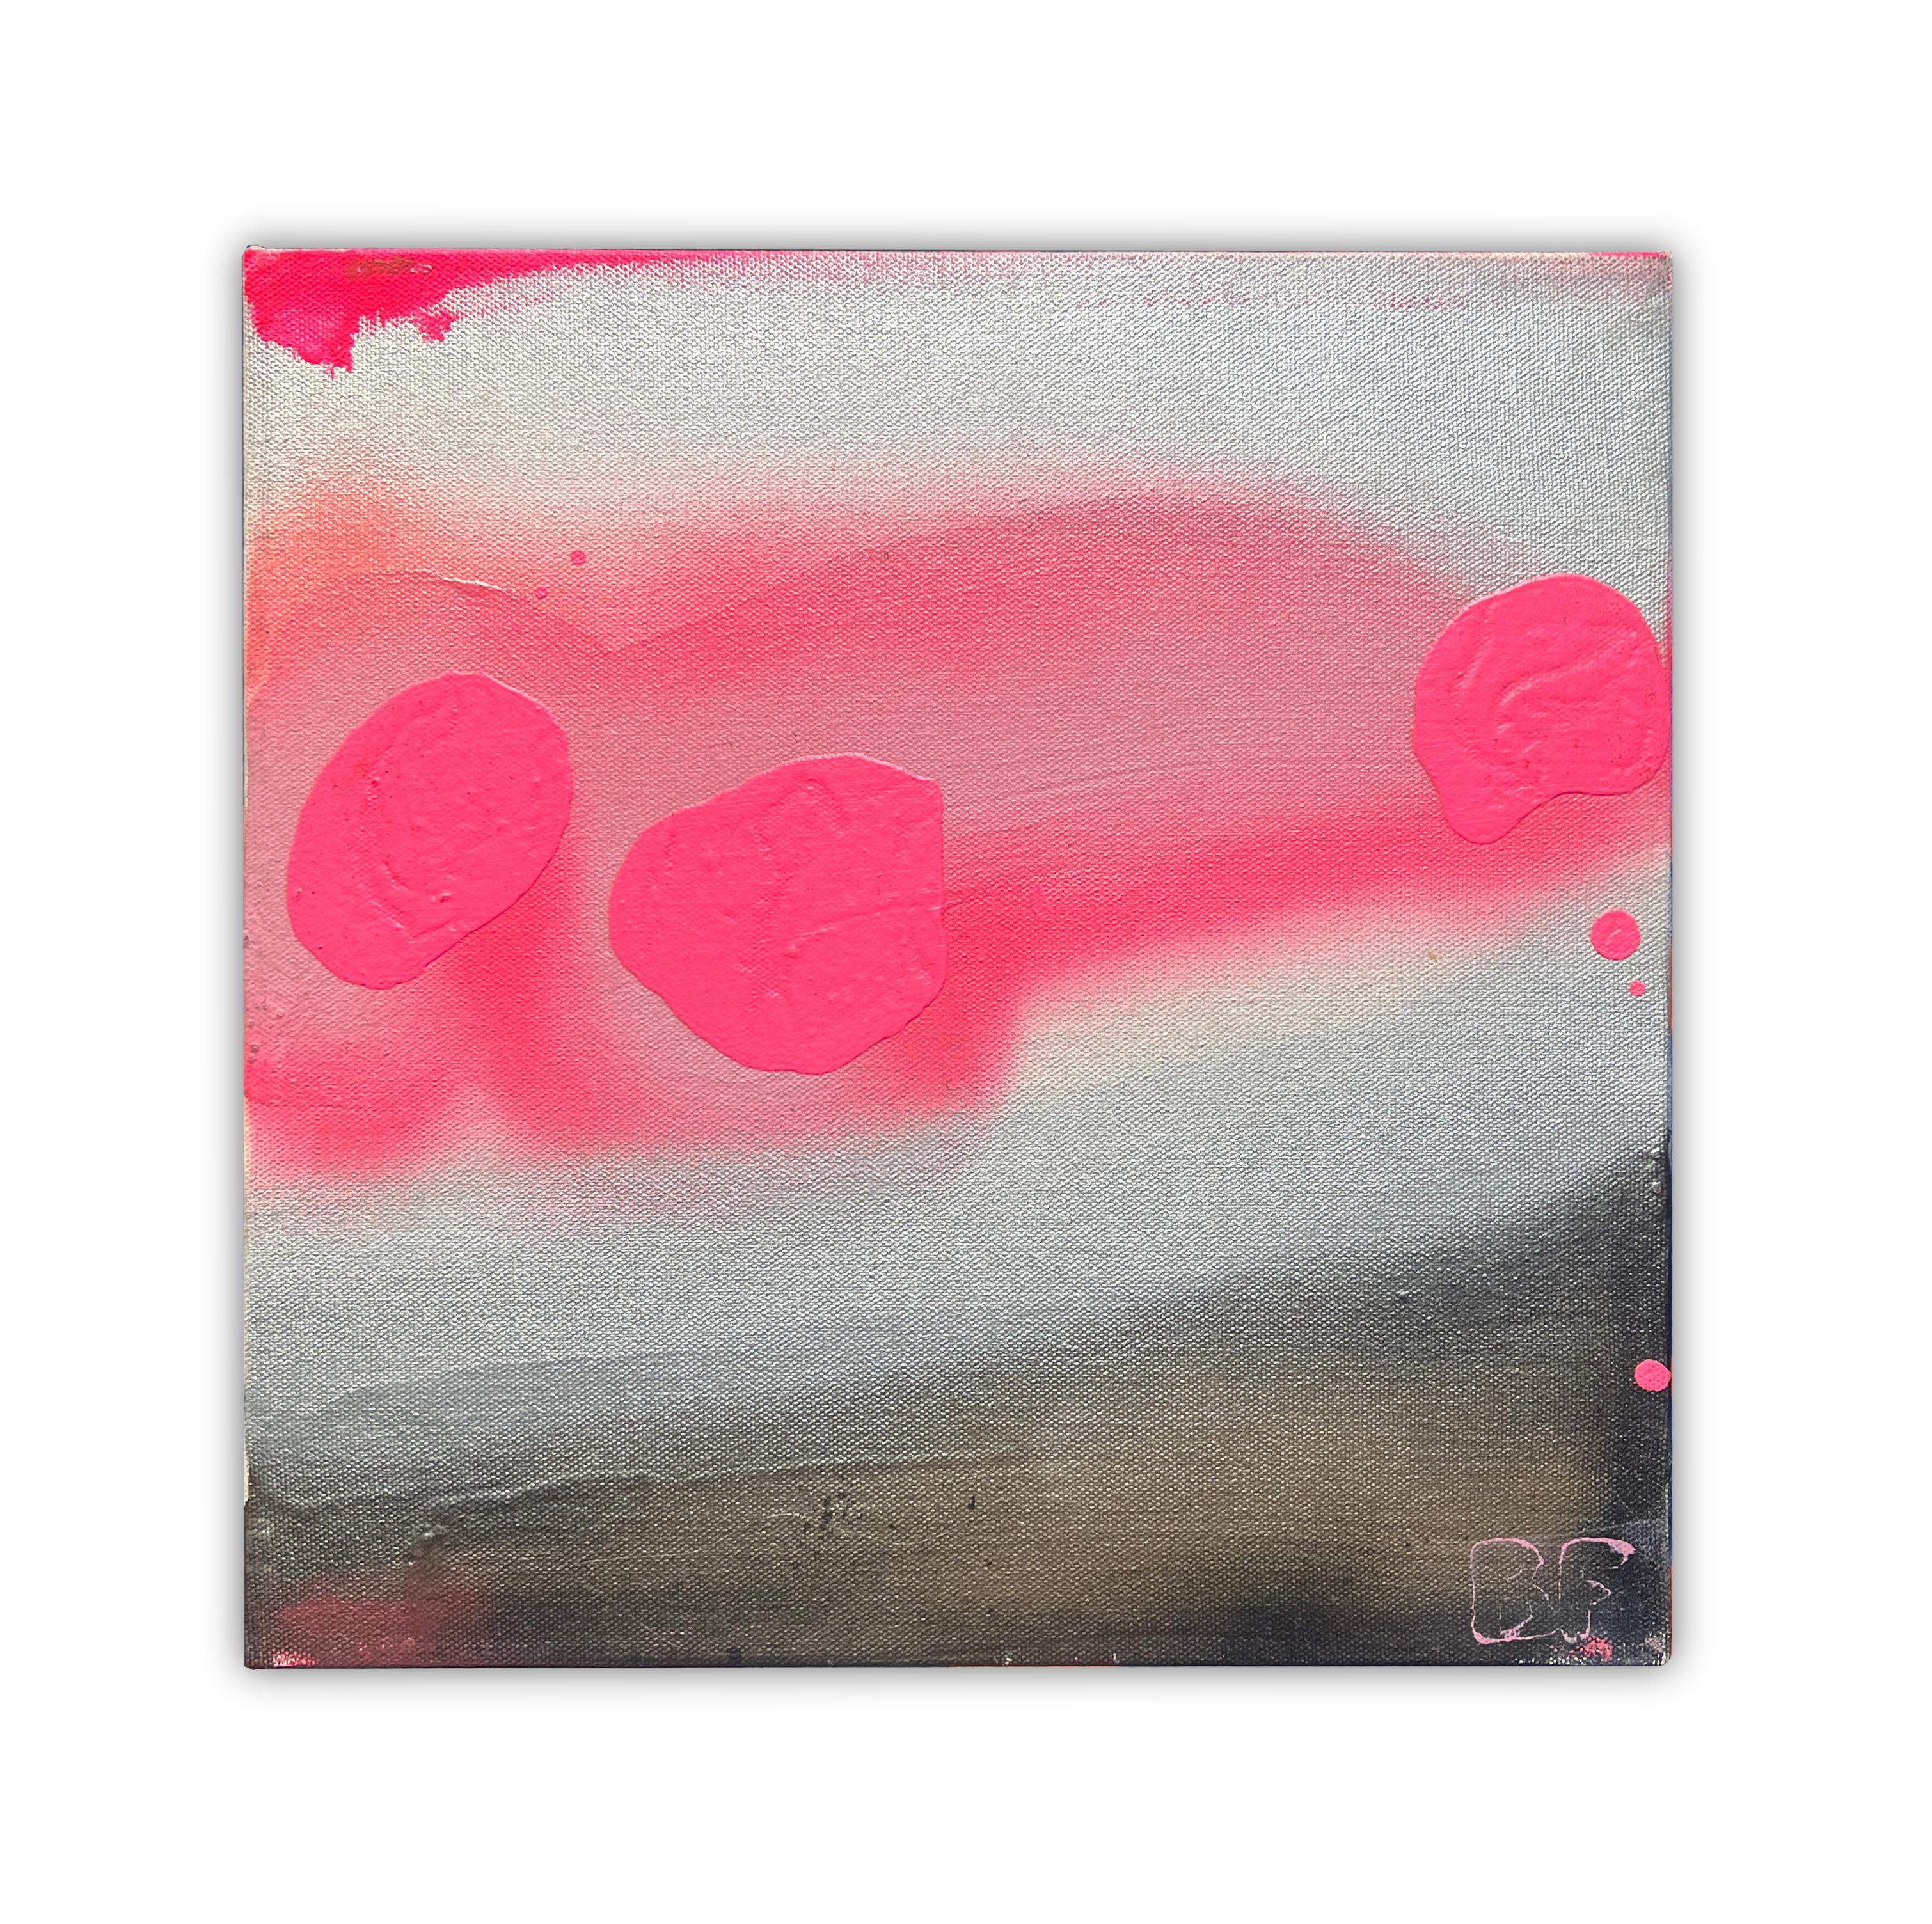 Petits nuages roses II, par Brad Fisher 

Acrylique et peinture en aérosol à l'éclat du jour sur toile

12 X 12 po.

L'expédition n'est pas incluse. Voir nos politiques d'expédition. Veuillez nous contacter pour obtenir un devis d'expédition et des